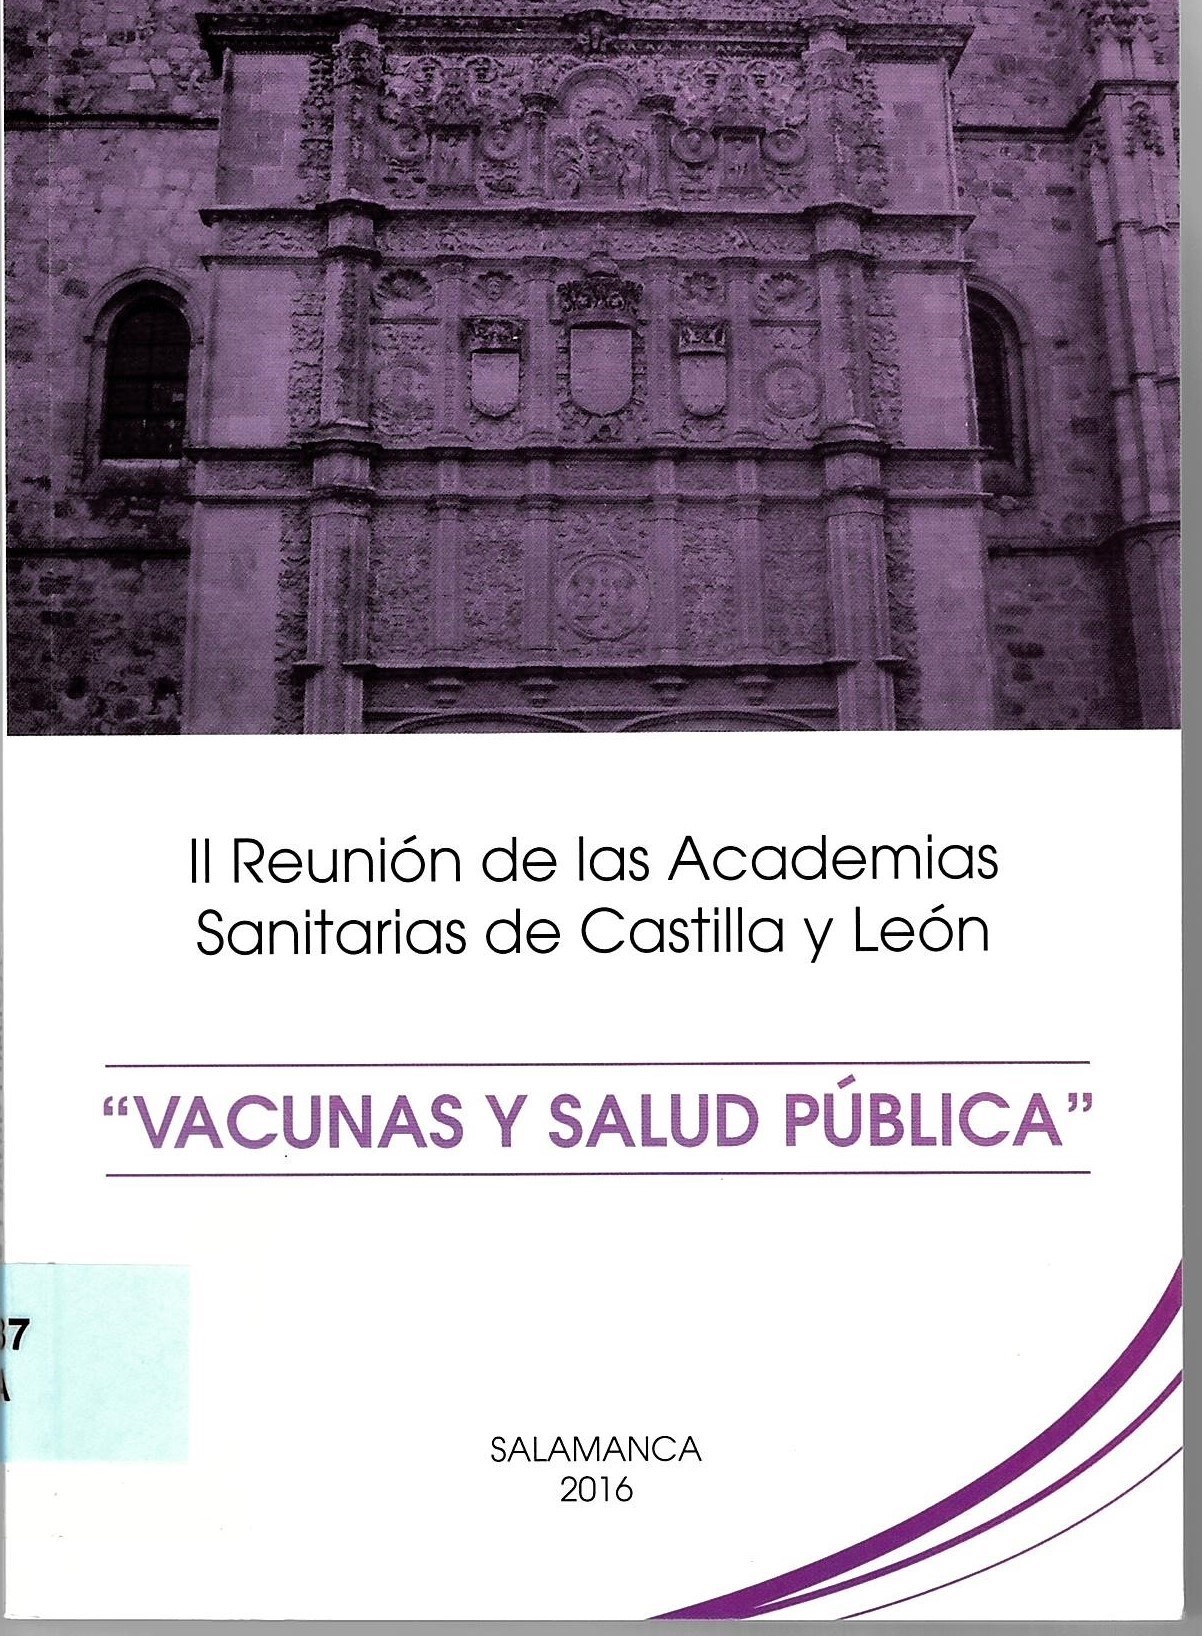 Imagen de portada del libro Vacunas y salud pública